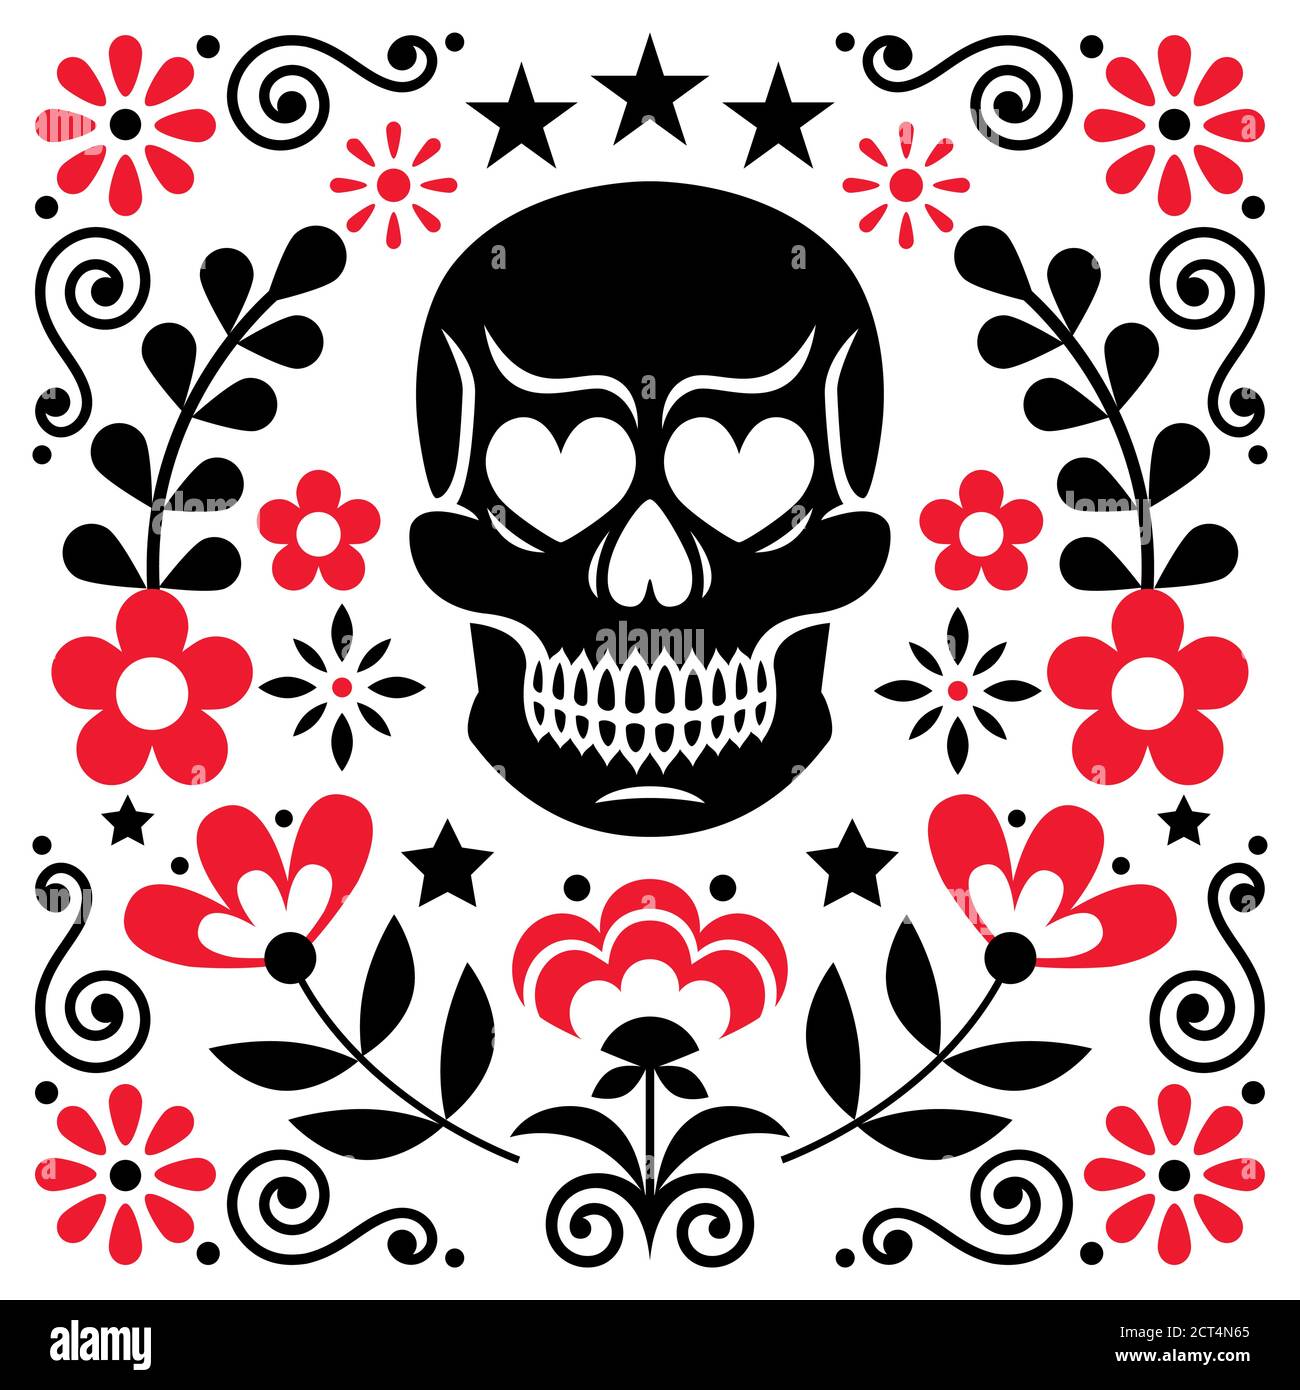 Disegno vettoriale di fiori e cranio messicano, decorazione floreale di Halloween e Day of the Dead - stile di arte popolare Illustrazione Vettoriale